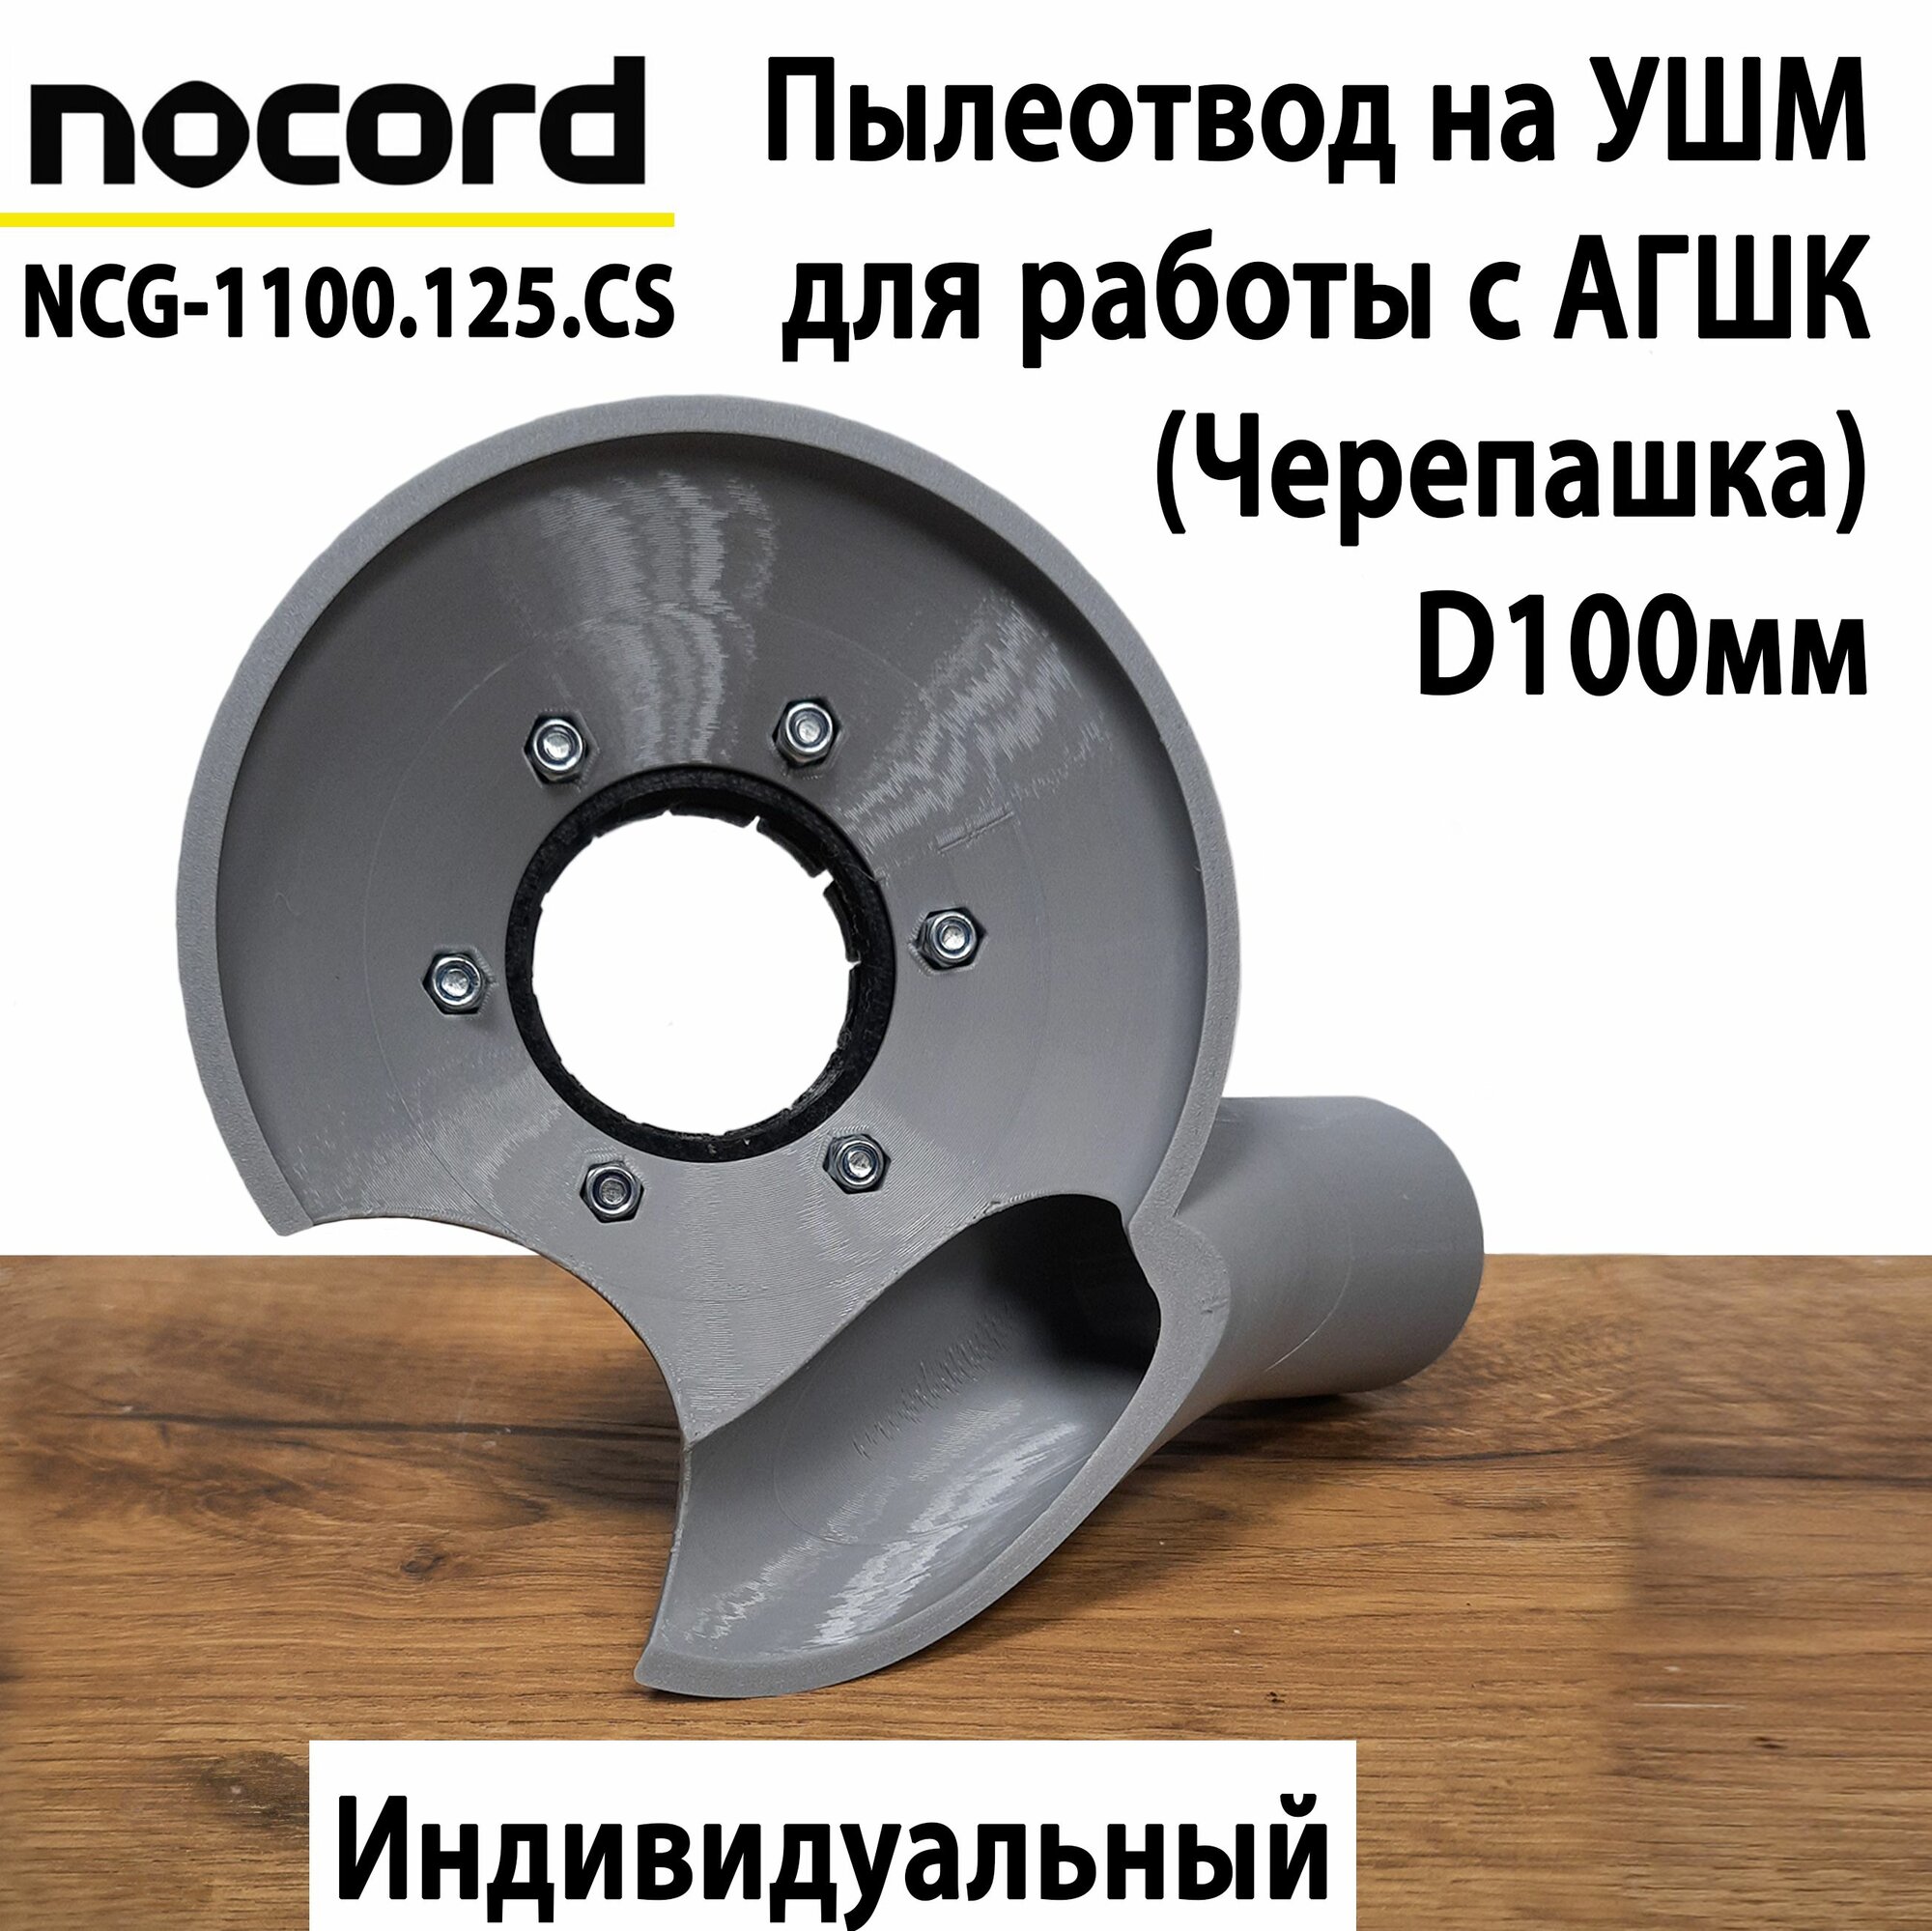 Пылеотвод на УШМ Nocord NCG-1100.125. CS для работы с АГШК 100мм